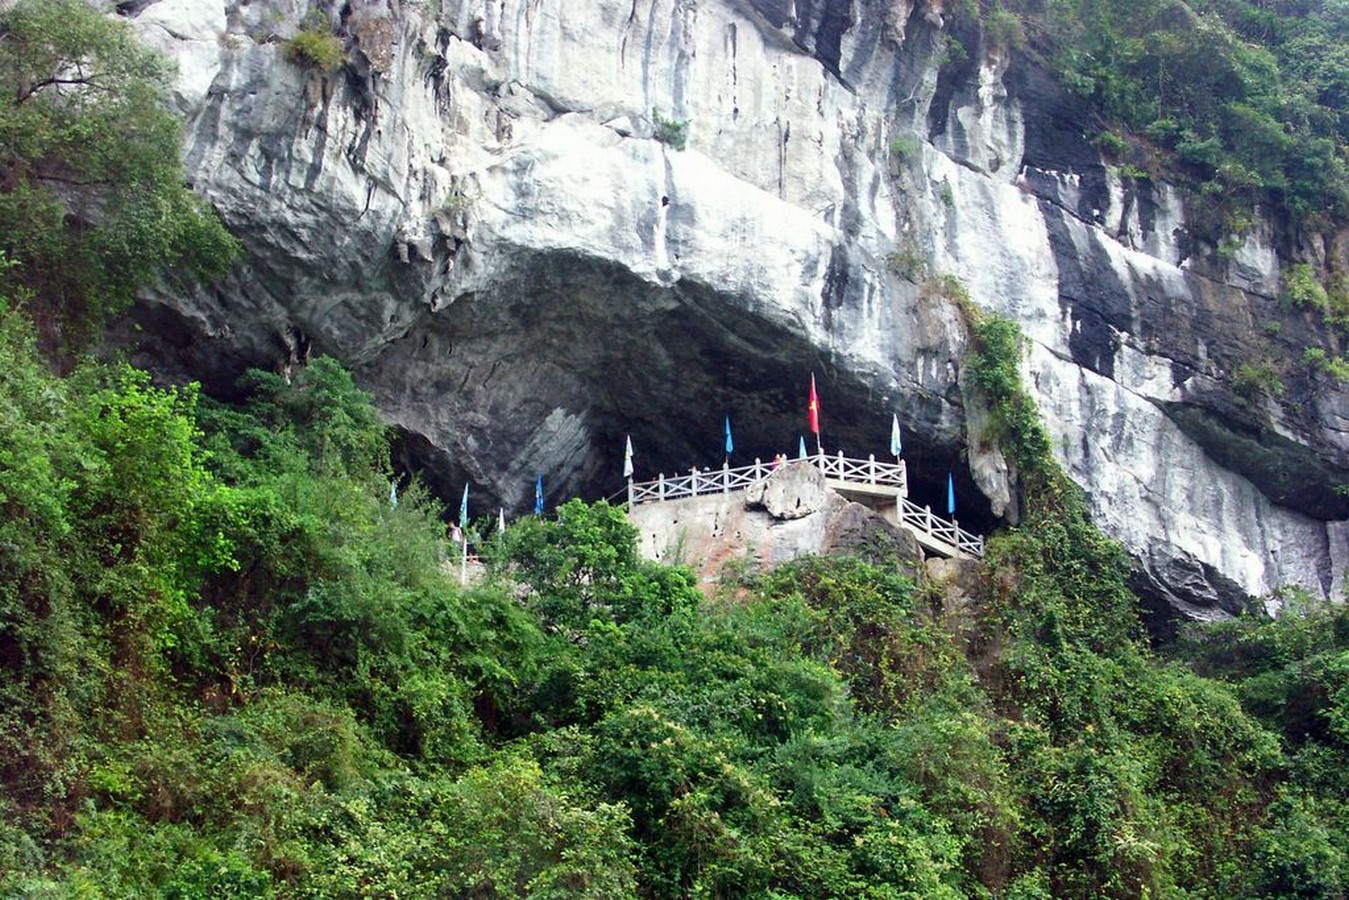 Sung Sot Cave Of Vietnam - Sheet1